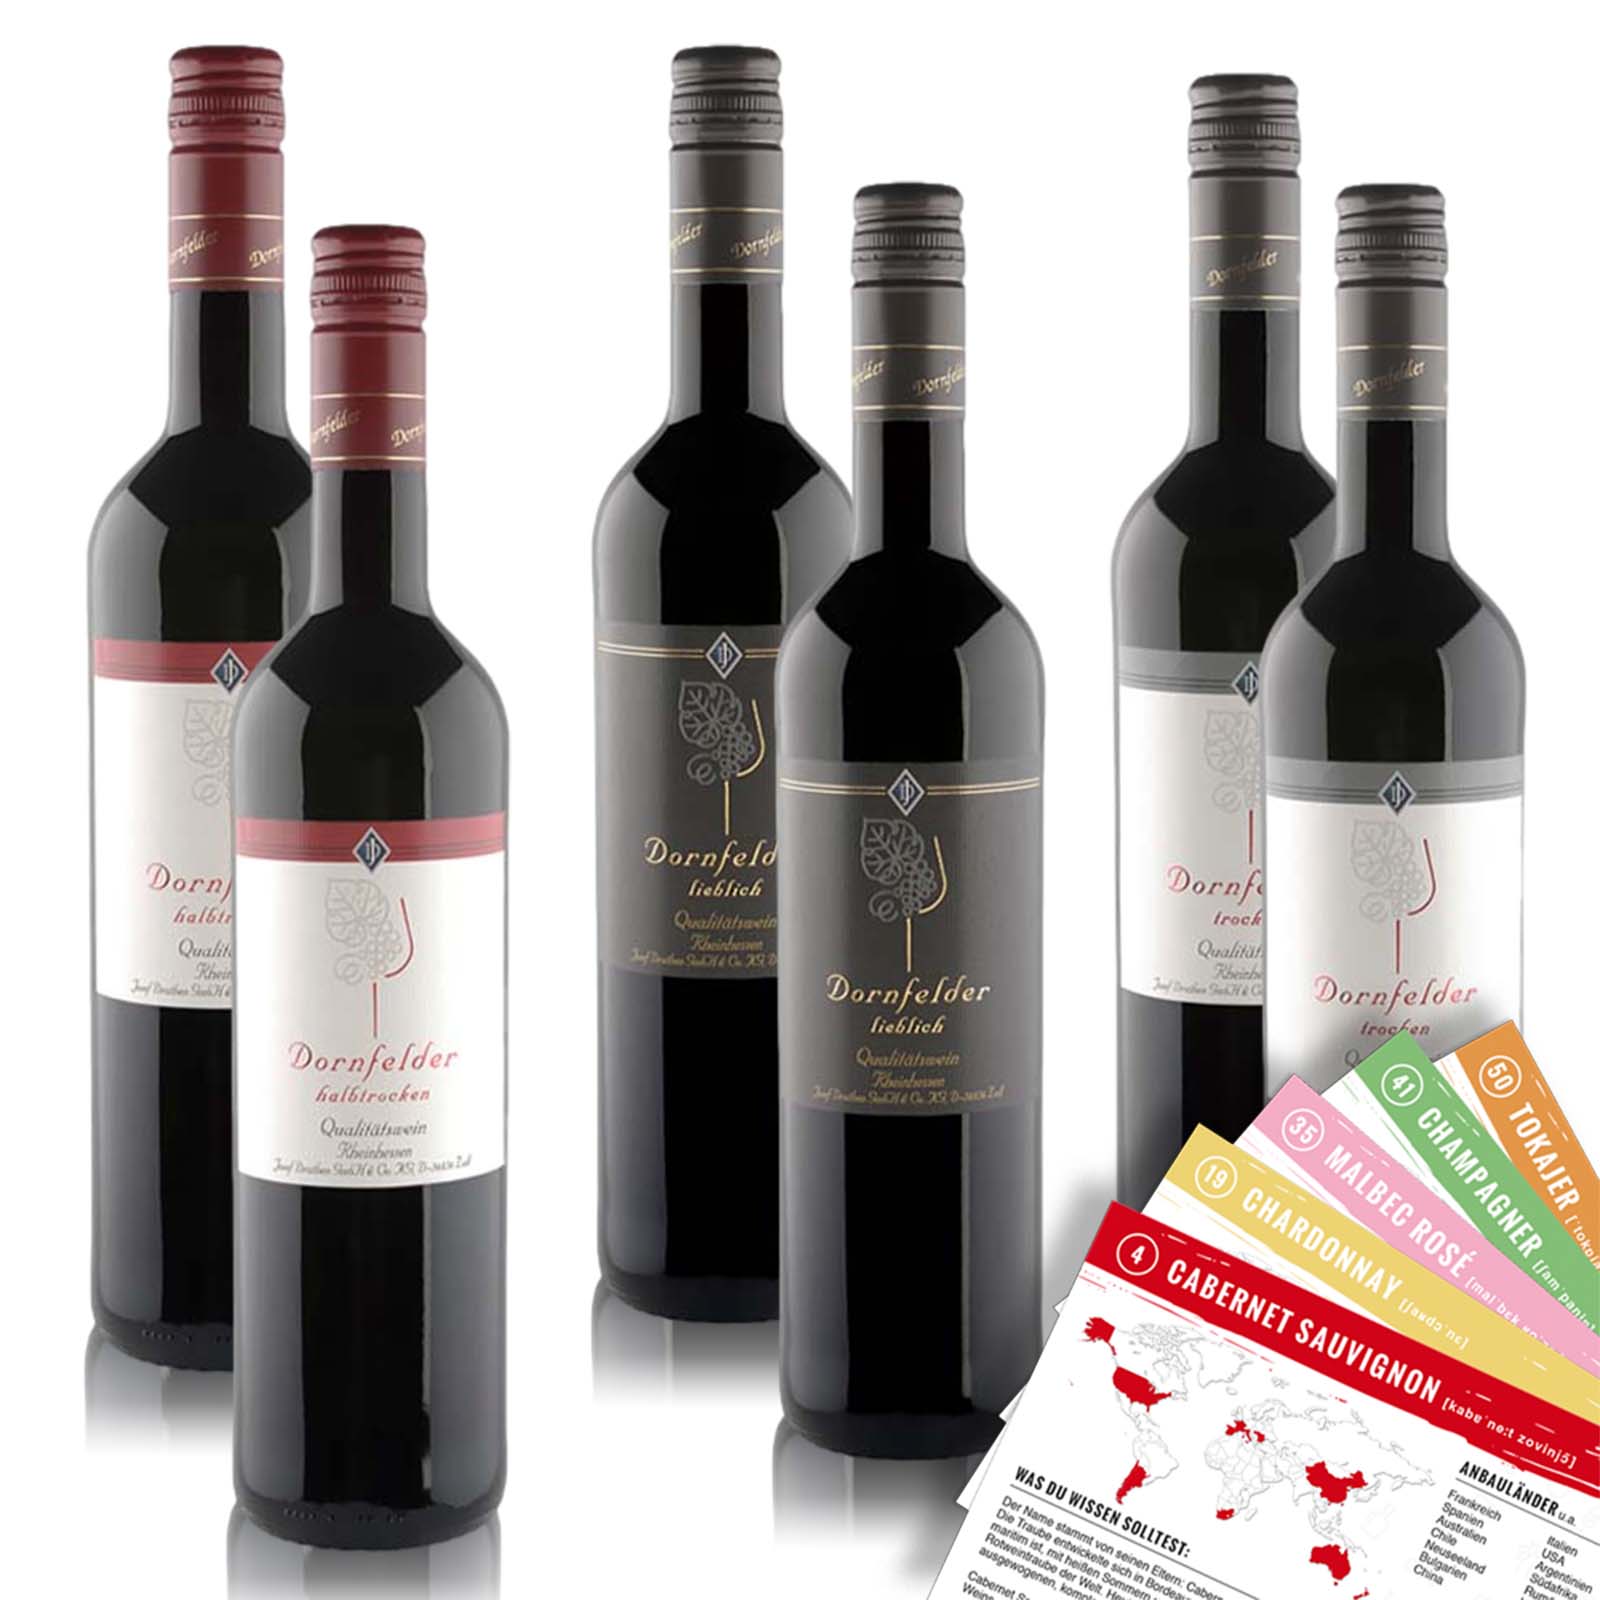 Josef Drathen Dornfelder Qualitätswein Probierpaket (6 x 0,75l) + VINOX Winecards